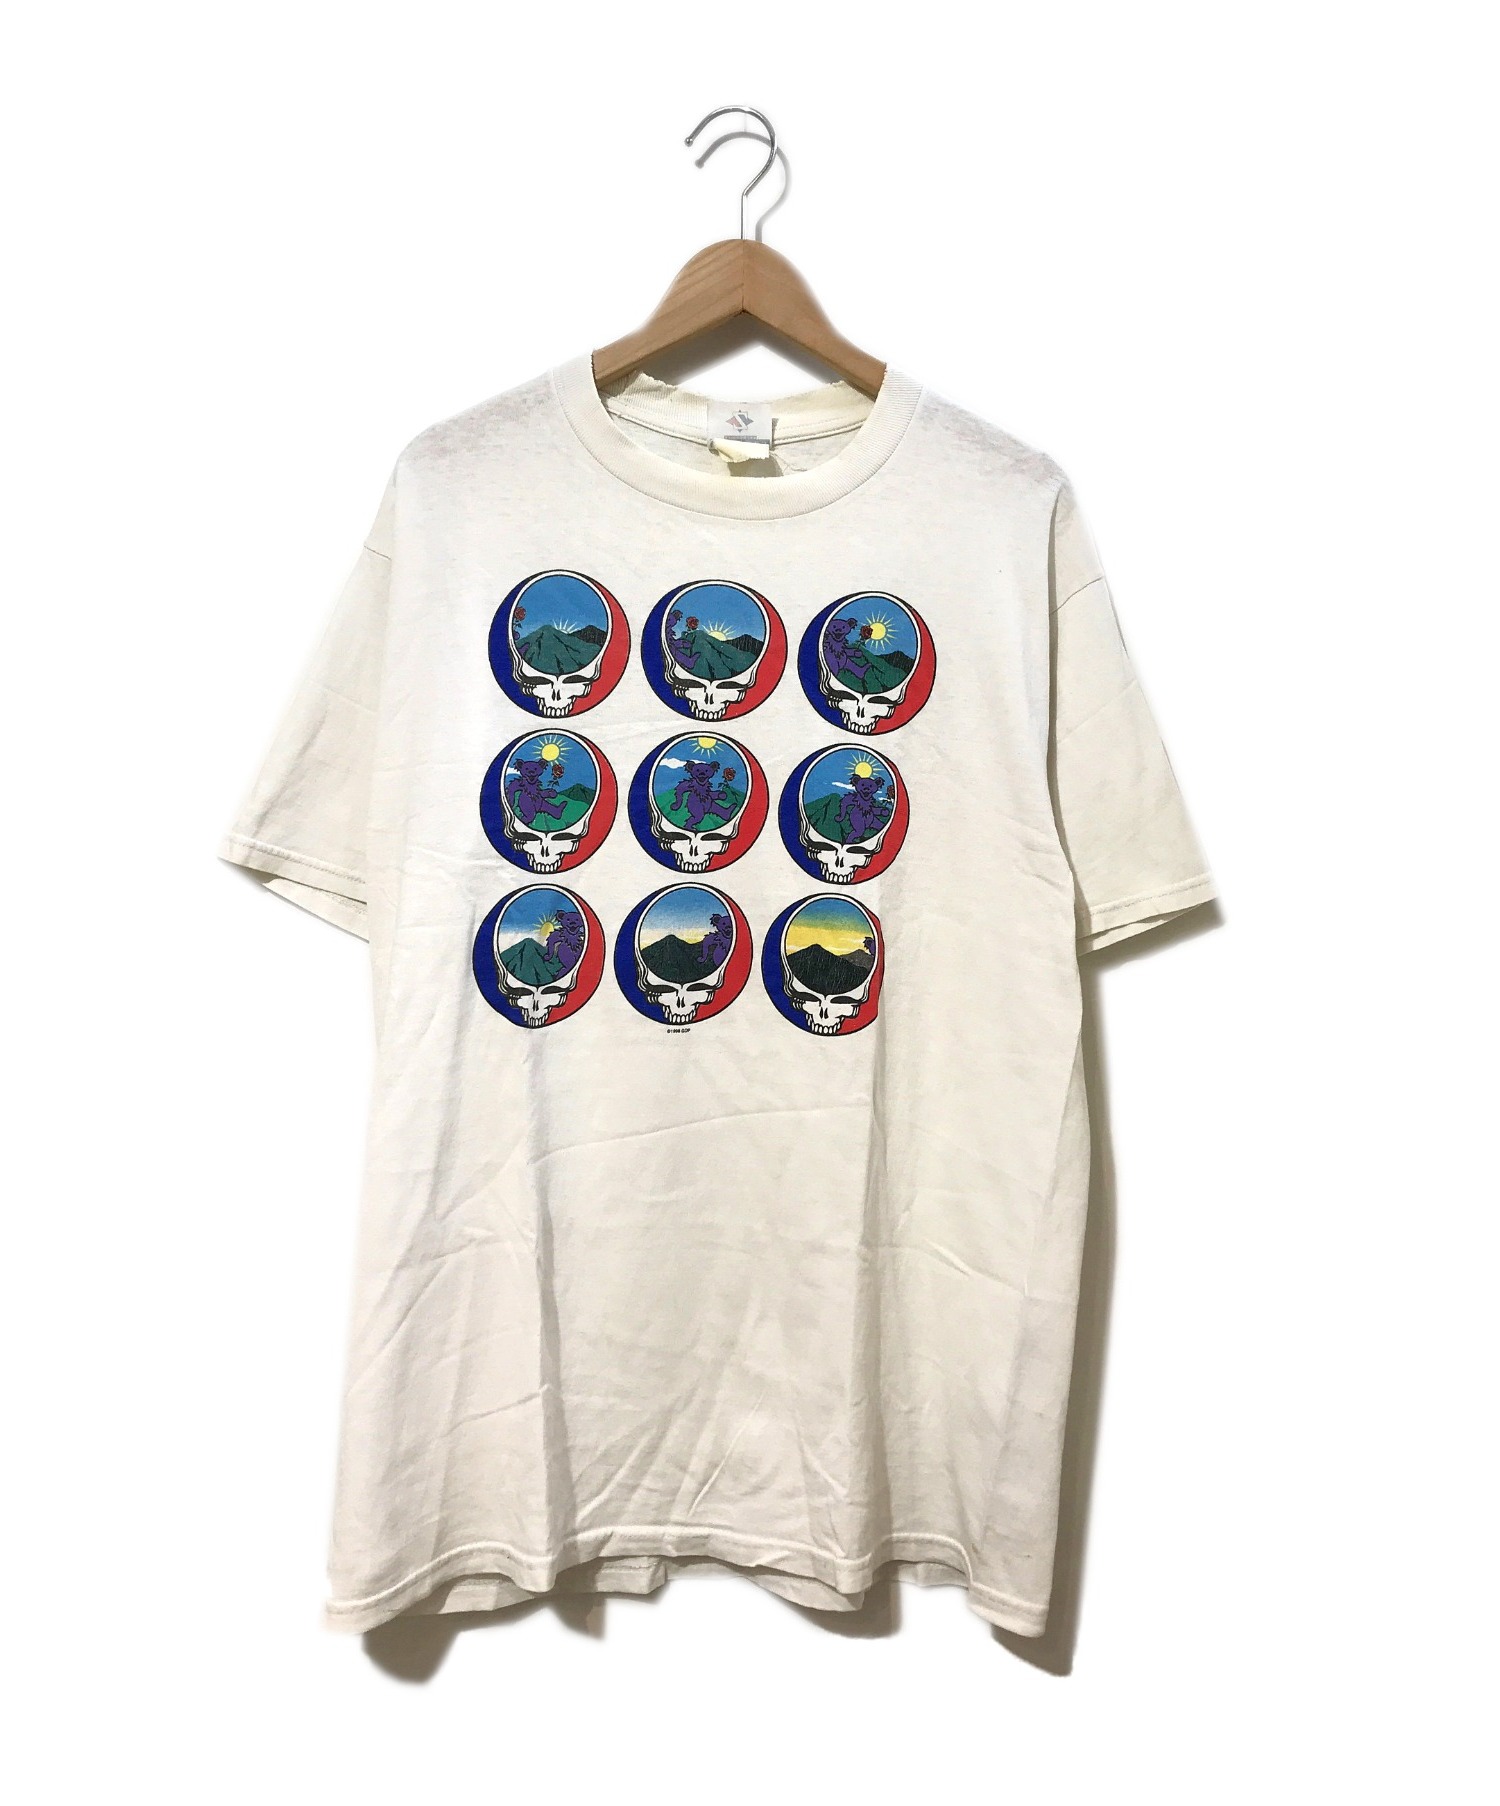 バンドTシャツ (バンドTシャツ) [古着]GRATEFUL DEAD90’sバンドTシャツ ホワイト サイズ:表記なし 1998年コピーライト・GD　 グレイトフルデッド